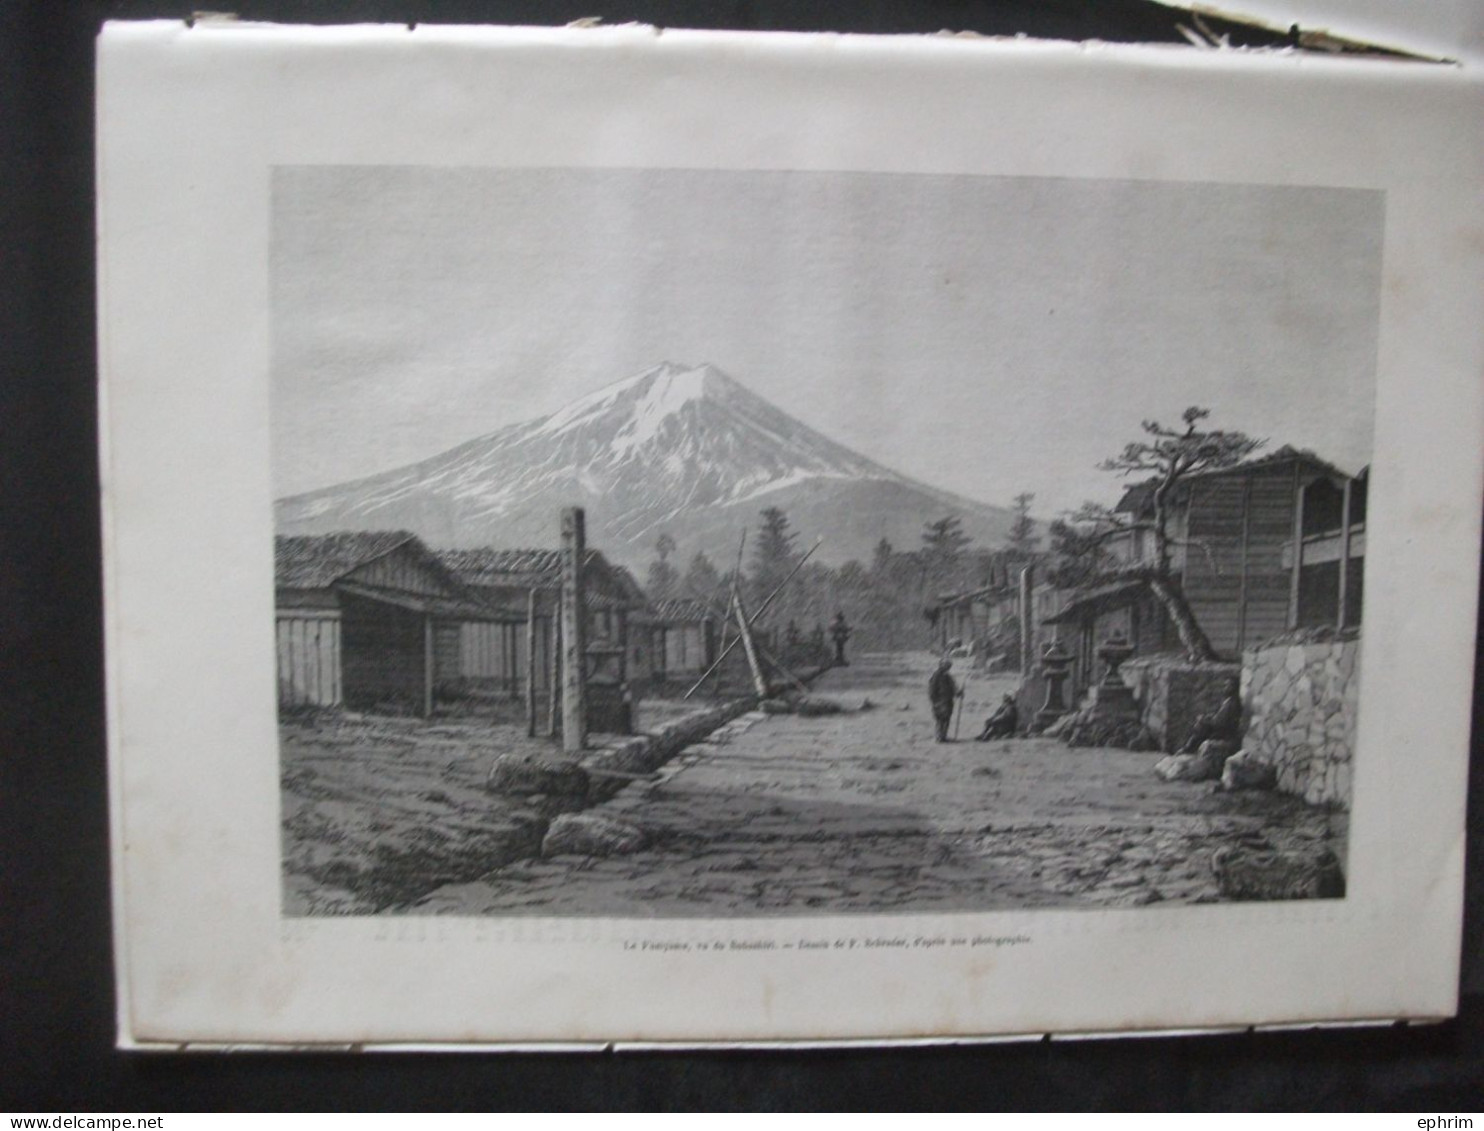 Revue Le Tour Du Monde Une Ascension Au Fusiyama Mont Fuji Japon Gravure Îles Lou-Tchou Islands Toda Sinfouji Japan 1874 - Magazines - Before 1900